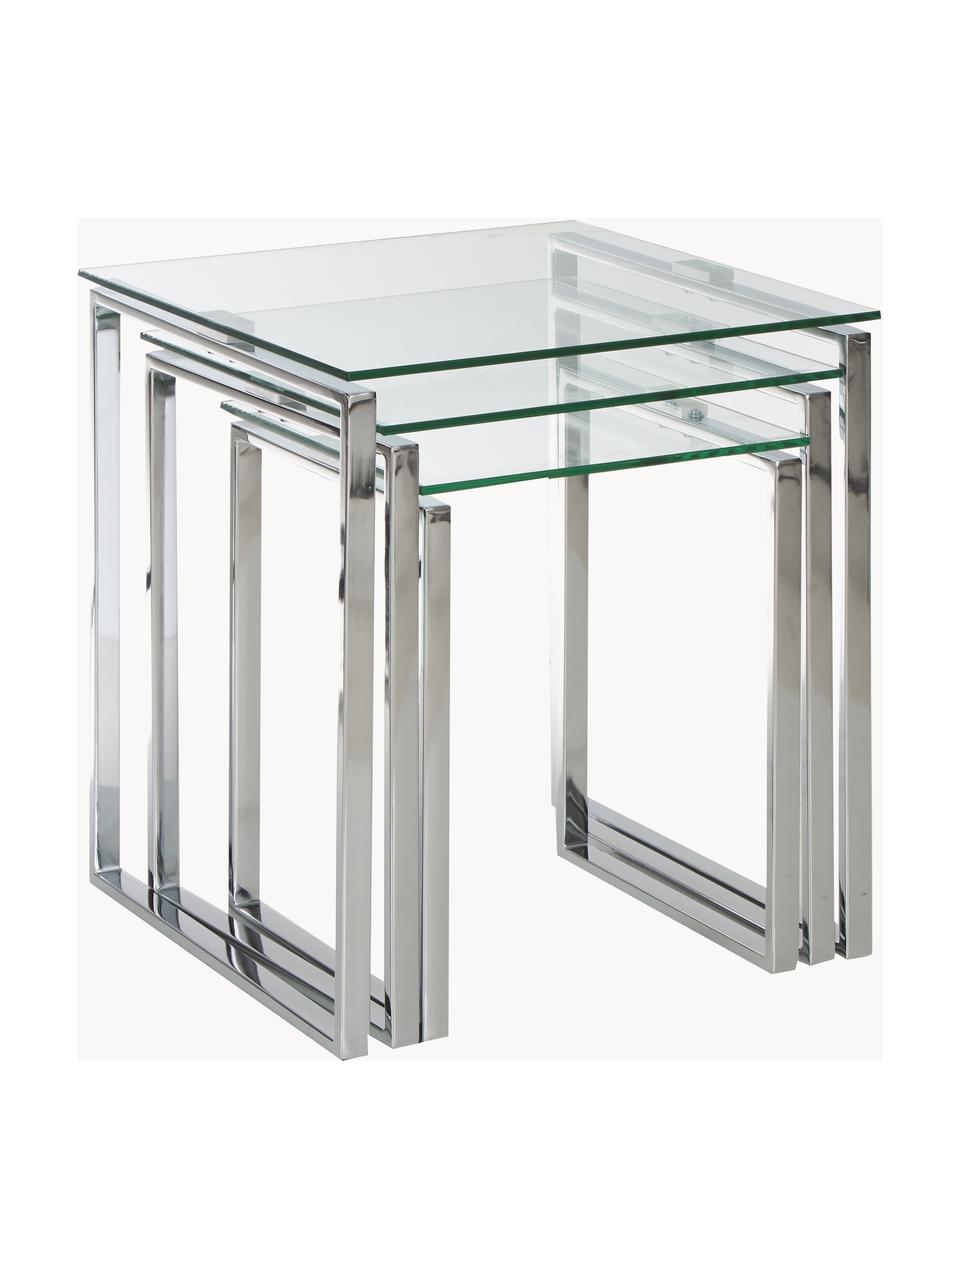 Beistelltisch Katrine mit Glasplatte, 3er-Set, Gestell: Stahl, verchromt, Tischplatte: Sicherheitsglas, Chromfarben, Transparent, Set mit verschiedenen Grössen